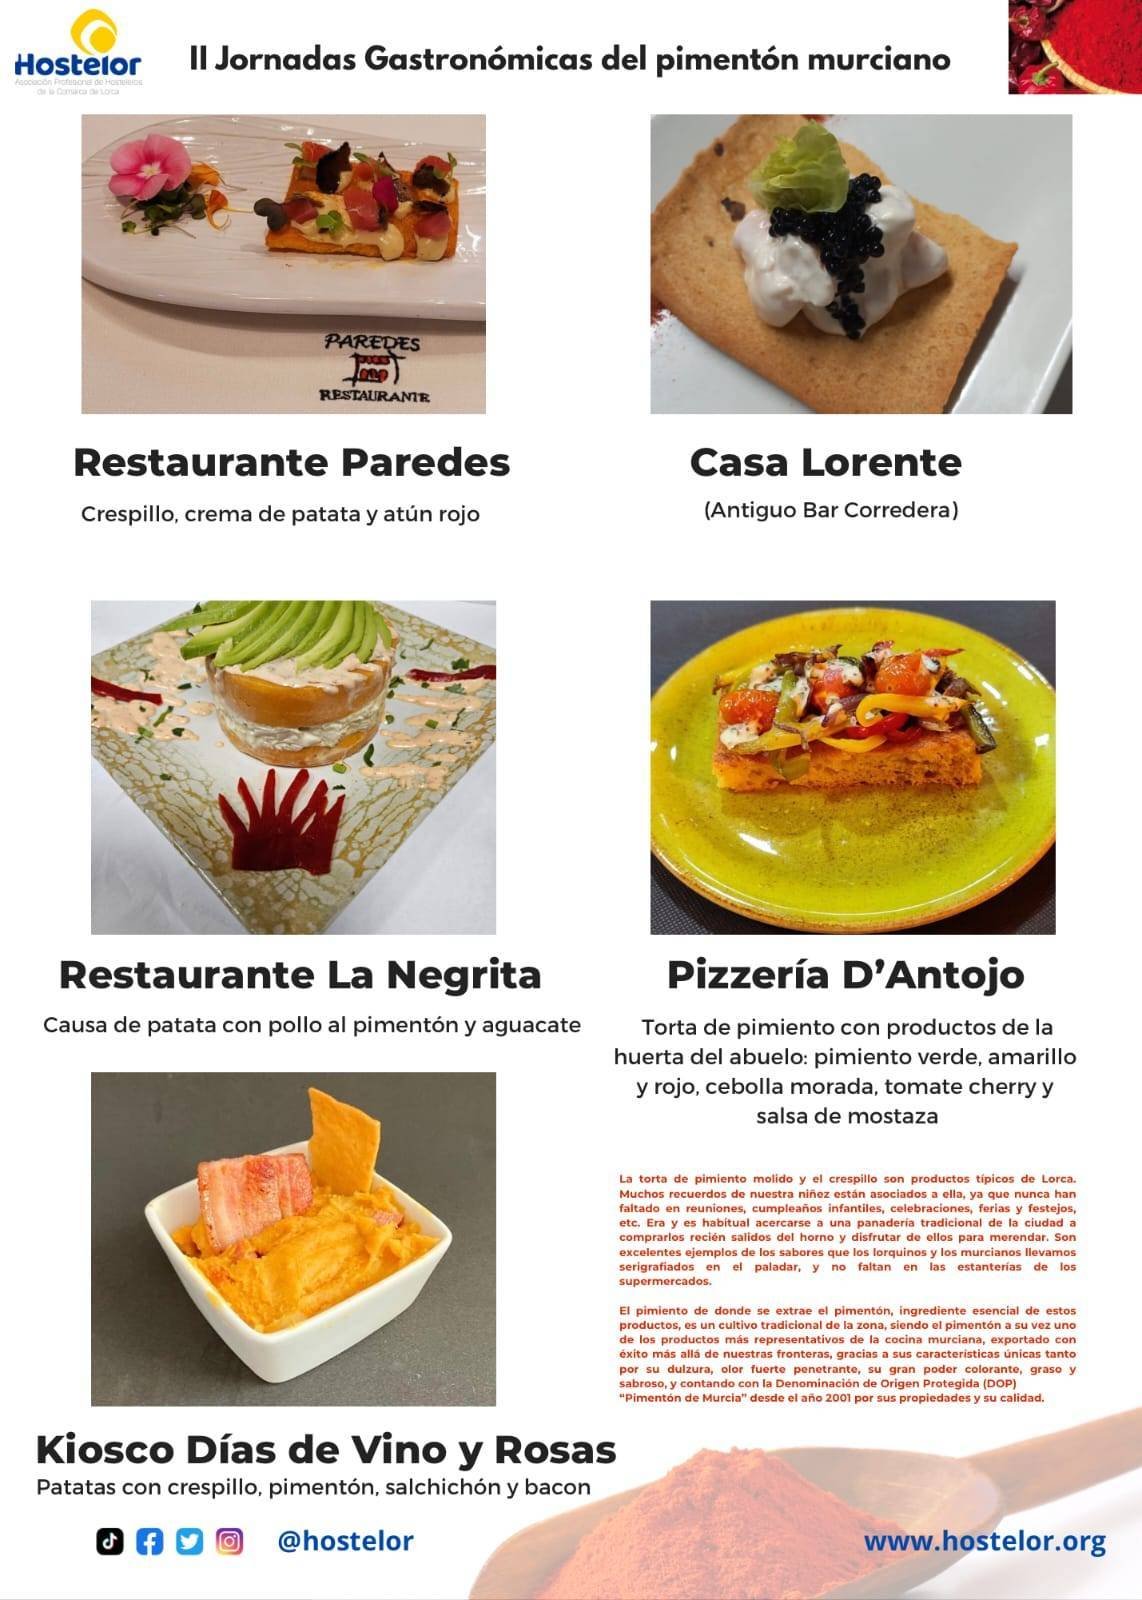 23 establecimientos de Lorca participan en las II Jornadas Gastronómicas del pimentón murciano organizadas por Hostelor 25